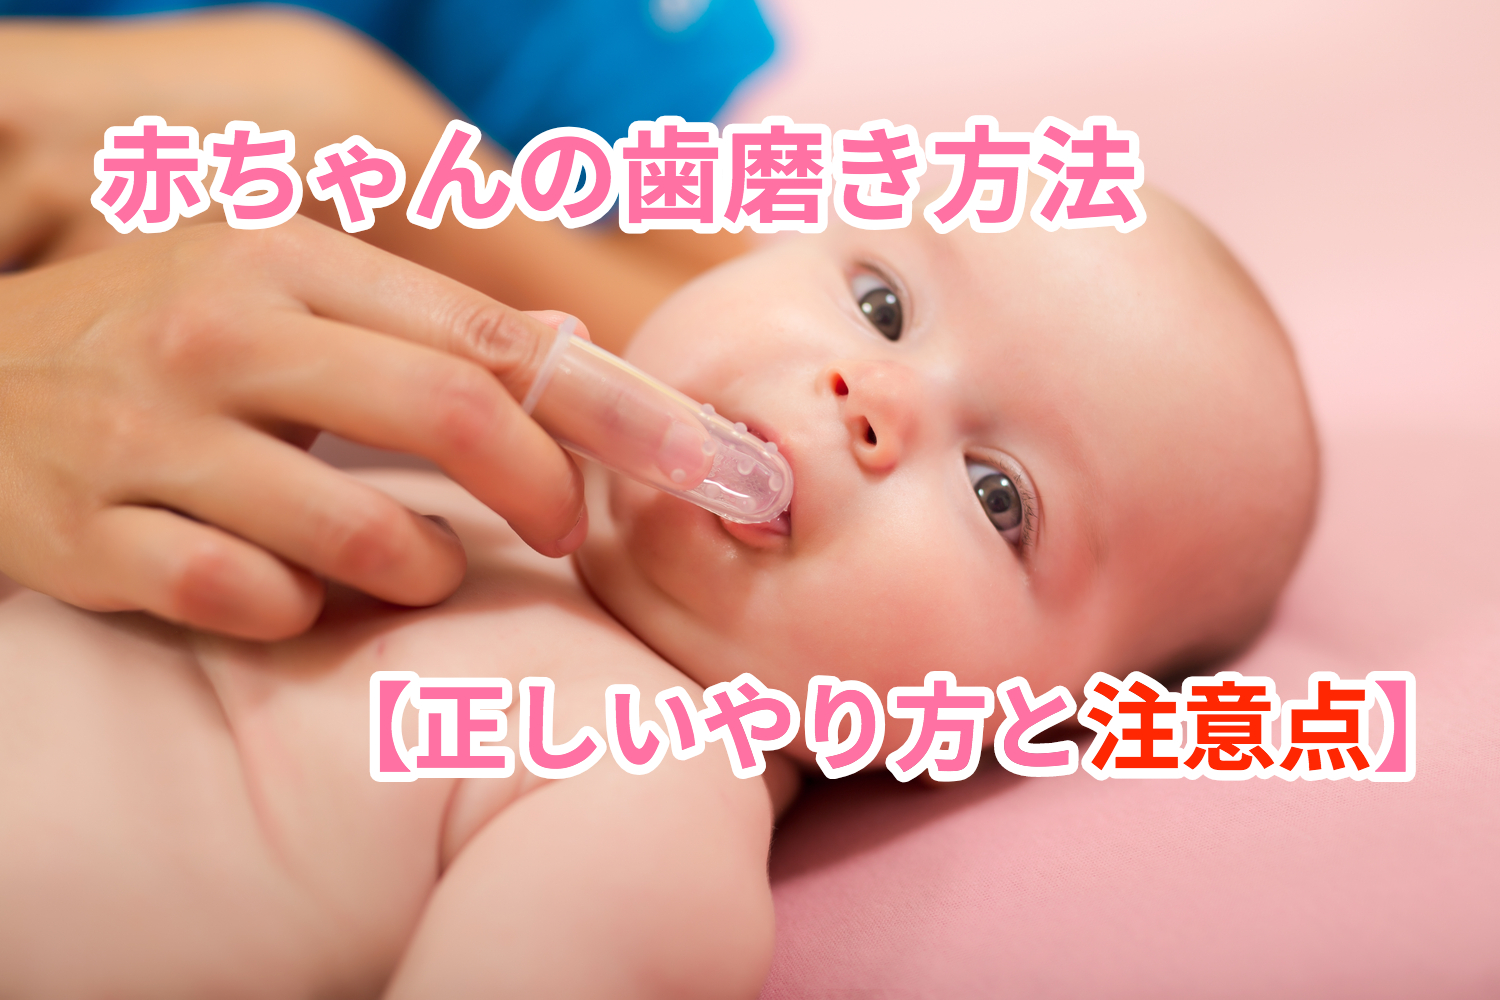 ジム 列車 ゲスト 赤ちゃん ガーゼ 歯磨き Kibimaruton Jp